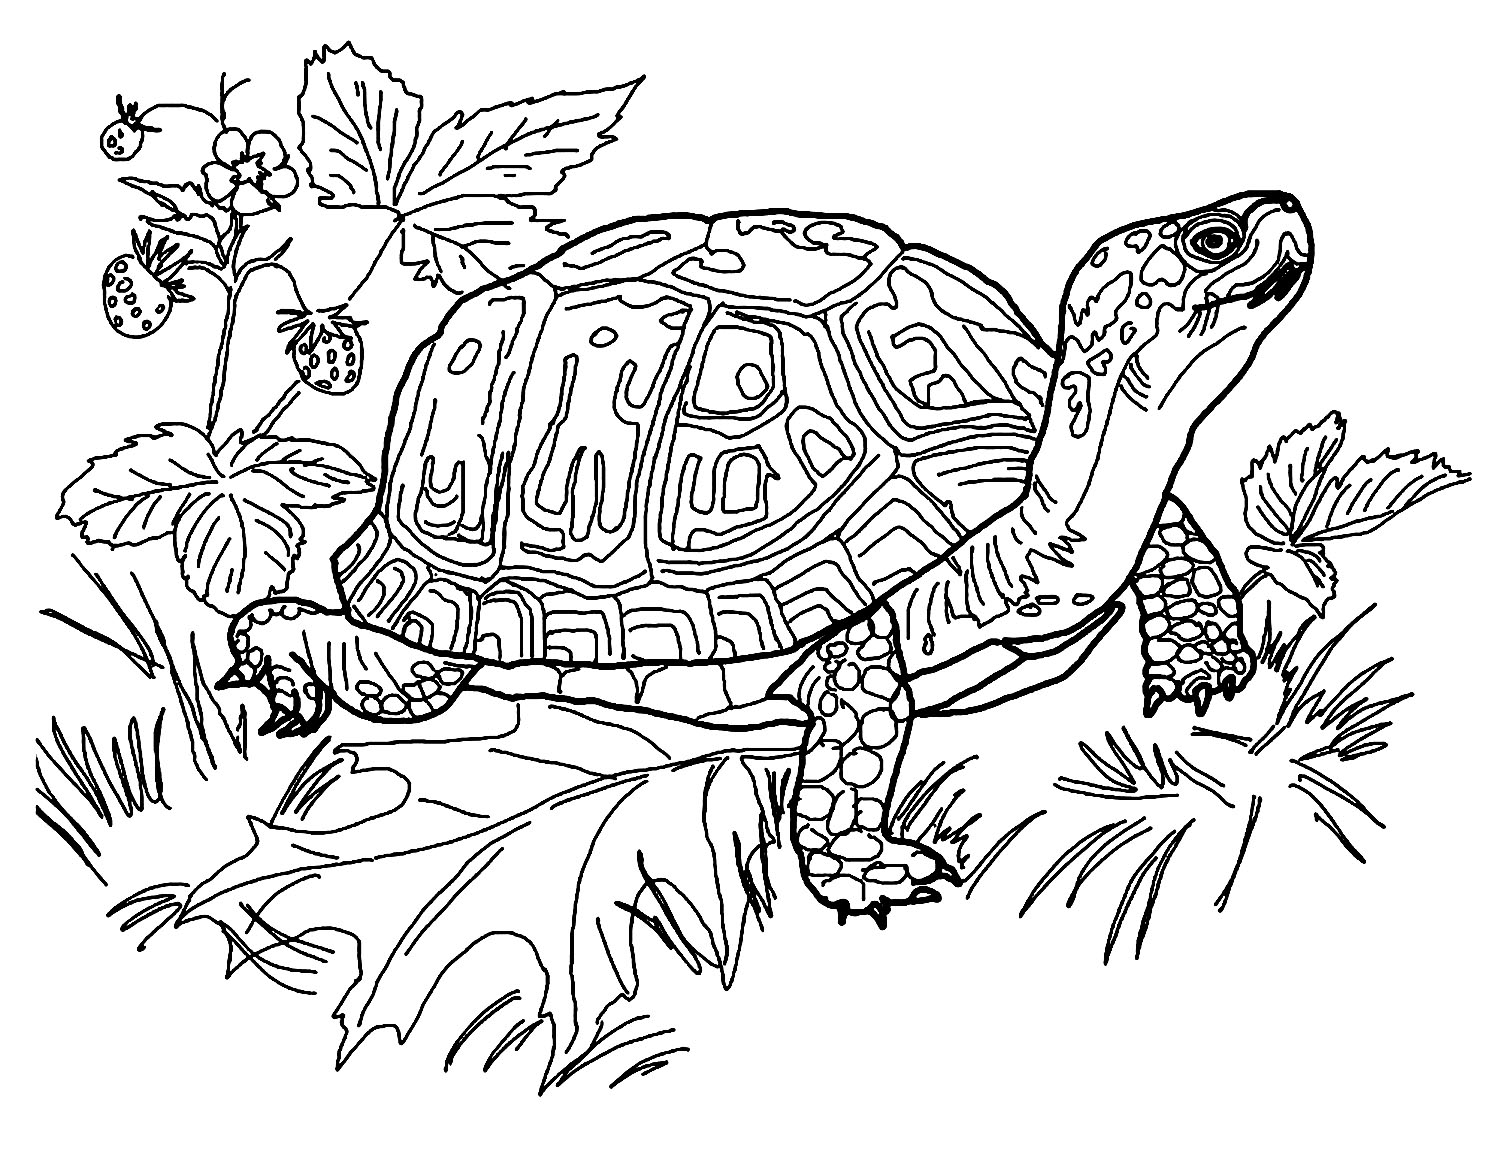 Préparez vos crayons et feutres pour colorier ce coloriage de tortue